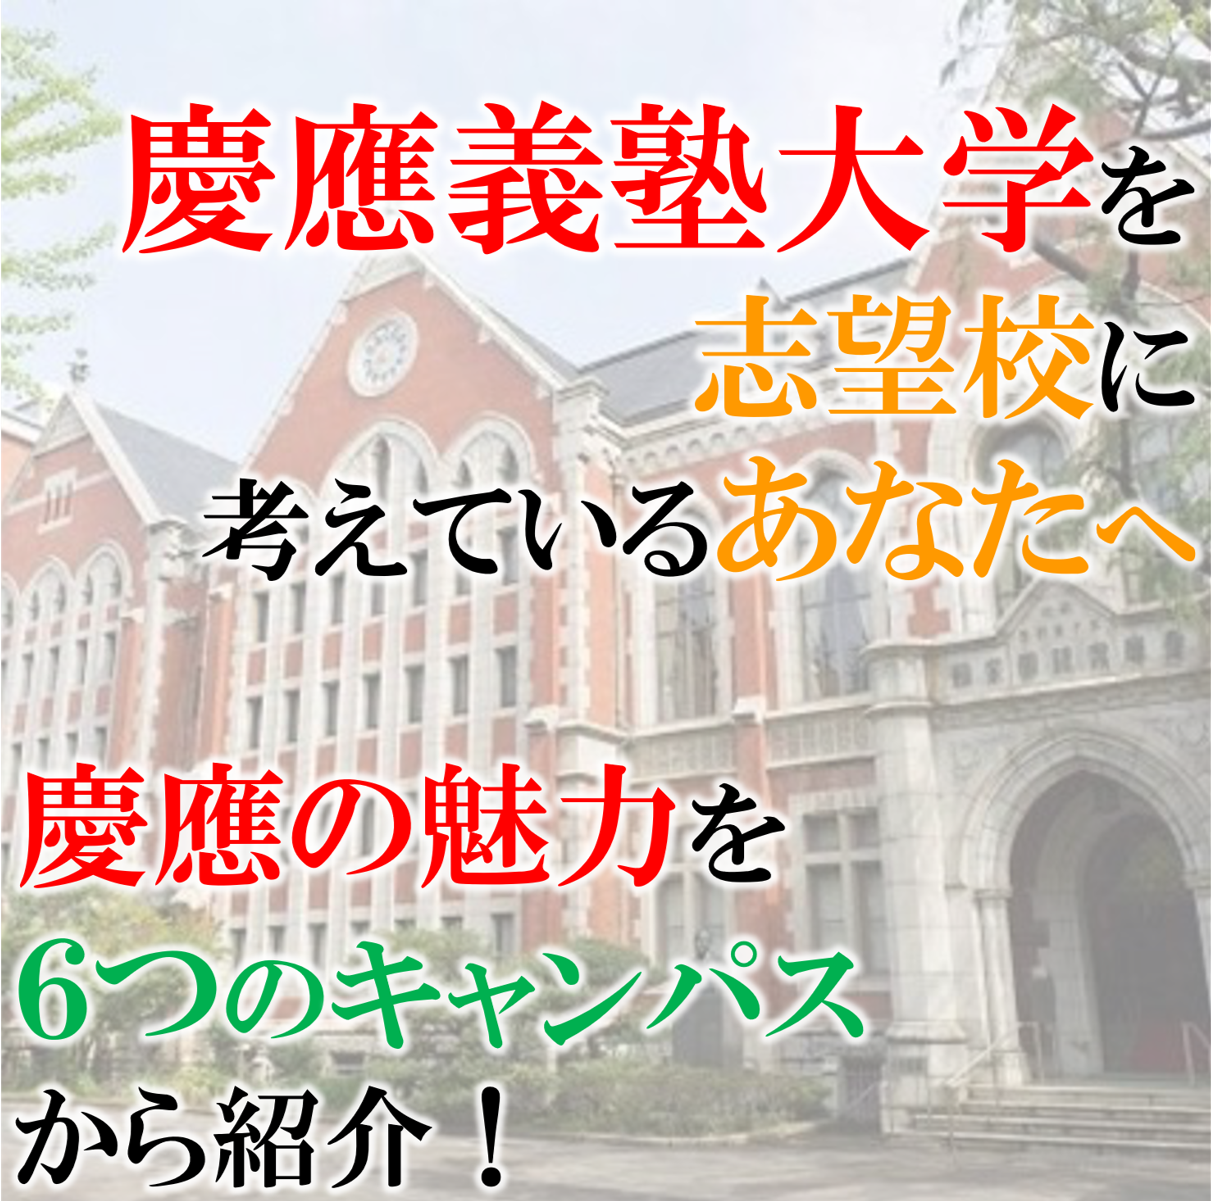 慶應のキャンパス紹介